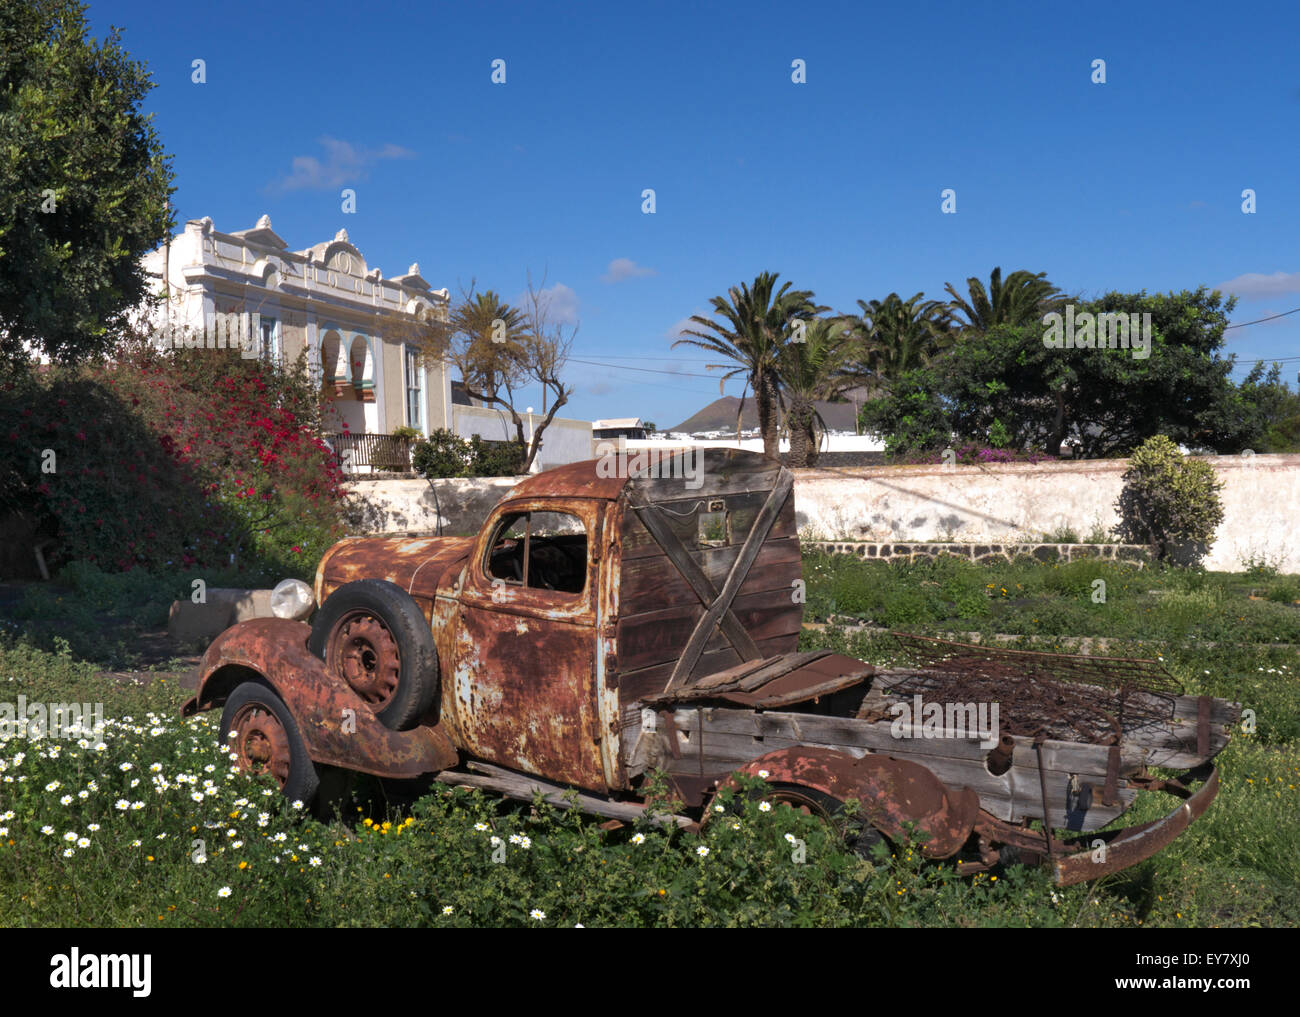 Rostigen alten abholen LKW Formen ein attraktives Feature in einem Lanzarote Garten mit alten Finca Bauernhof hinter Kanaren Spanien Stockfoto